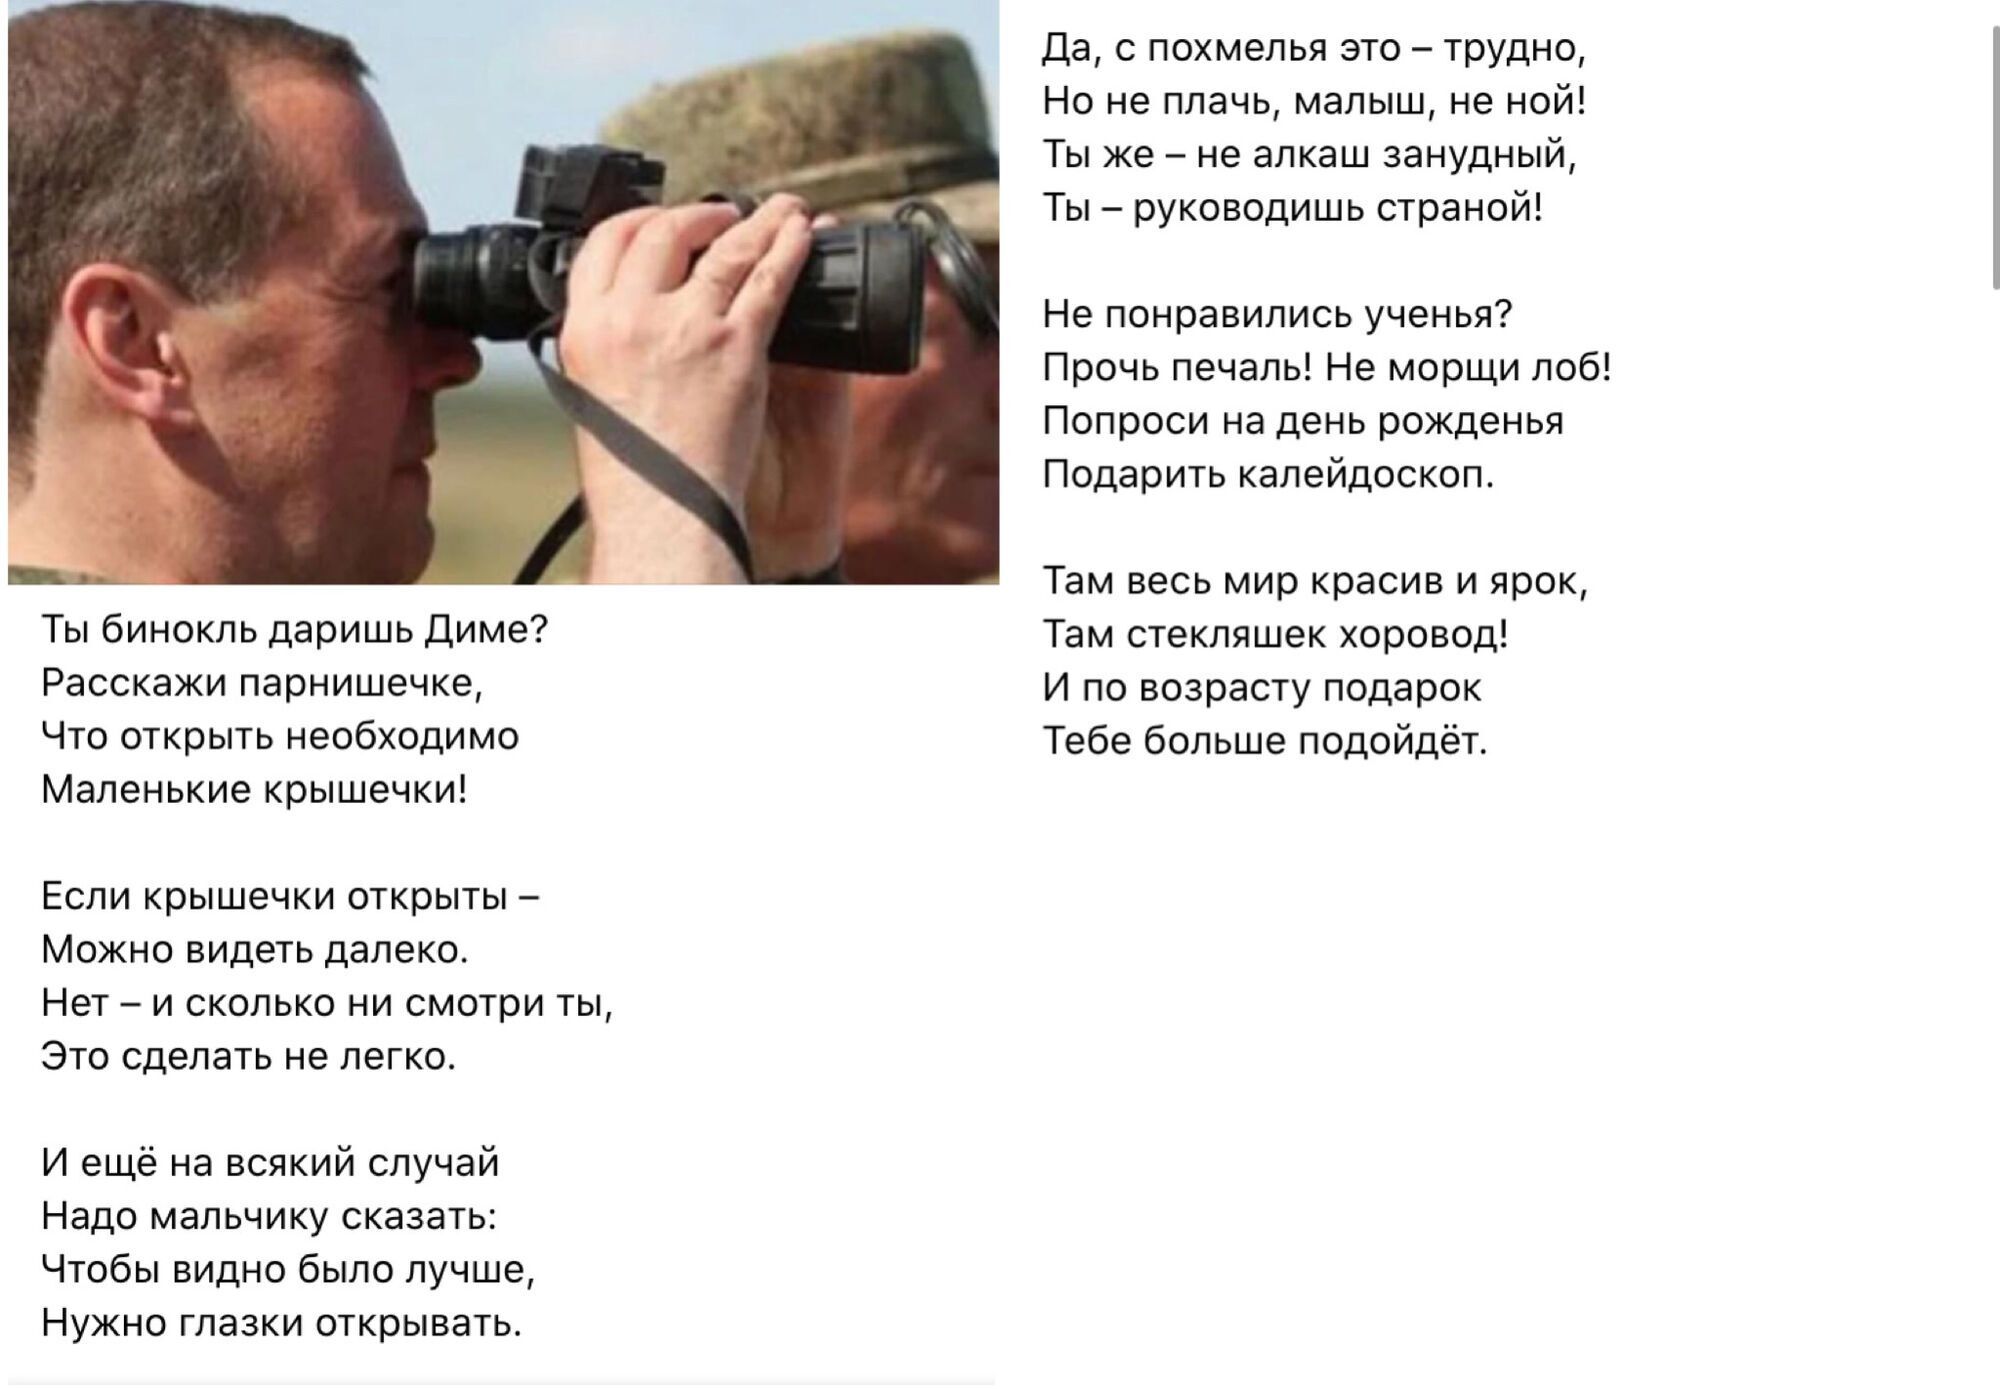 Российский поэт Орлуша высмеял Медведева, который смотрел в закрытый бинокль: ты же не алкаш, а руководитель!